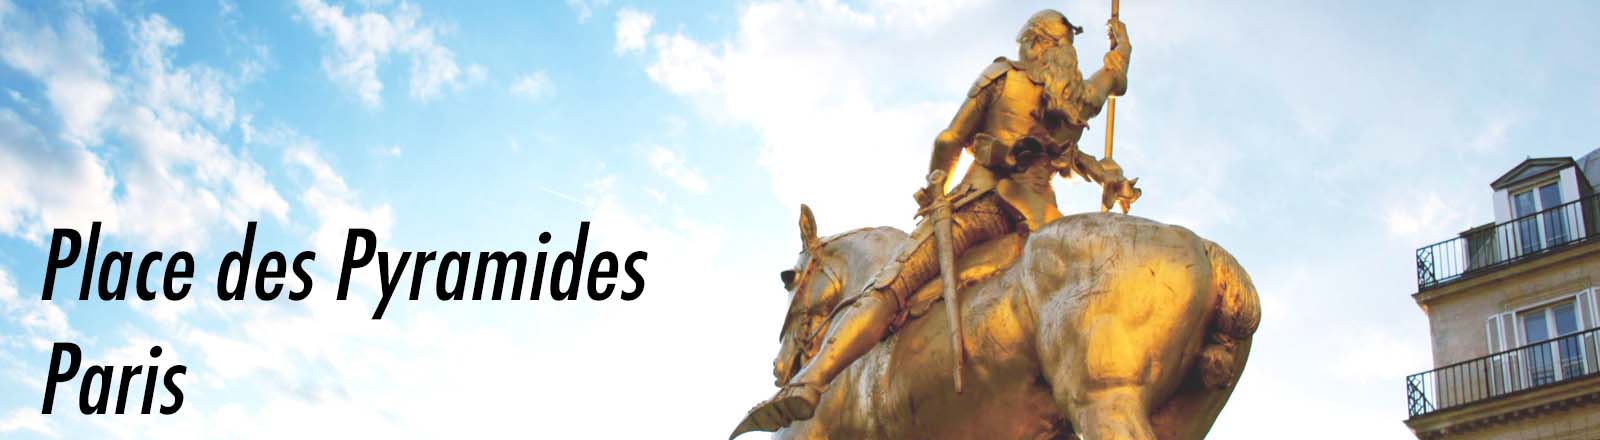 Statue de Jeanne d'Arc, place des Pyramides